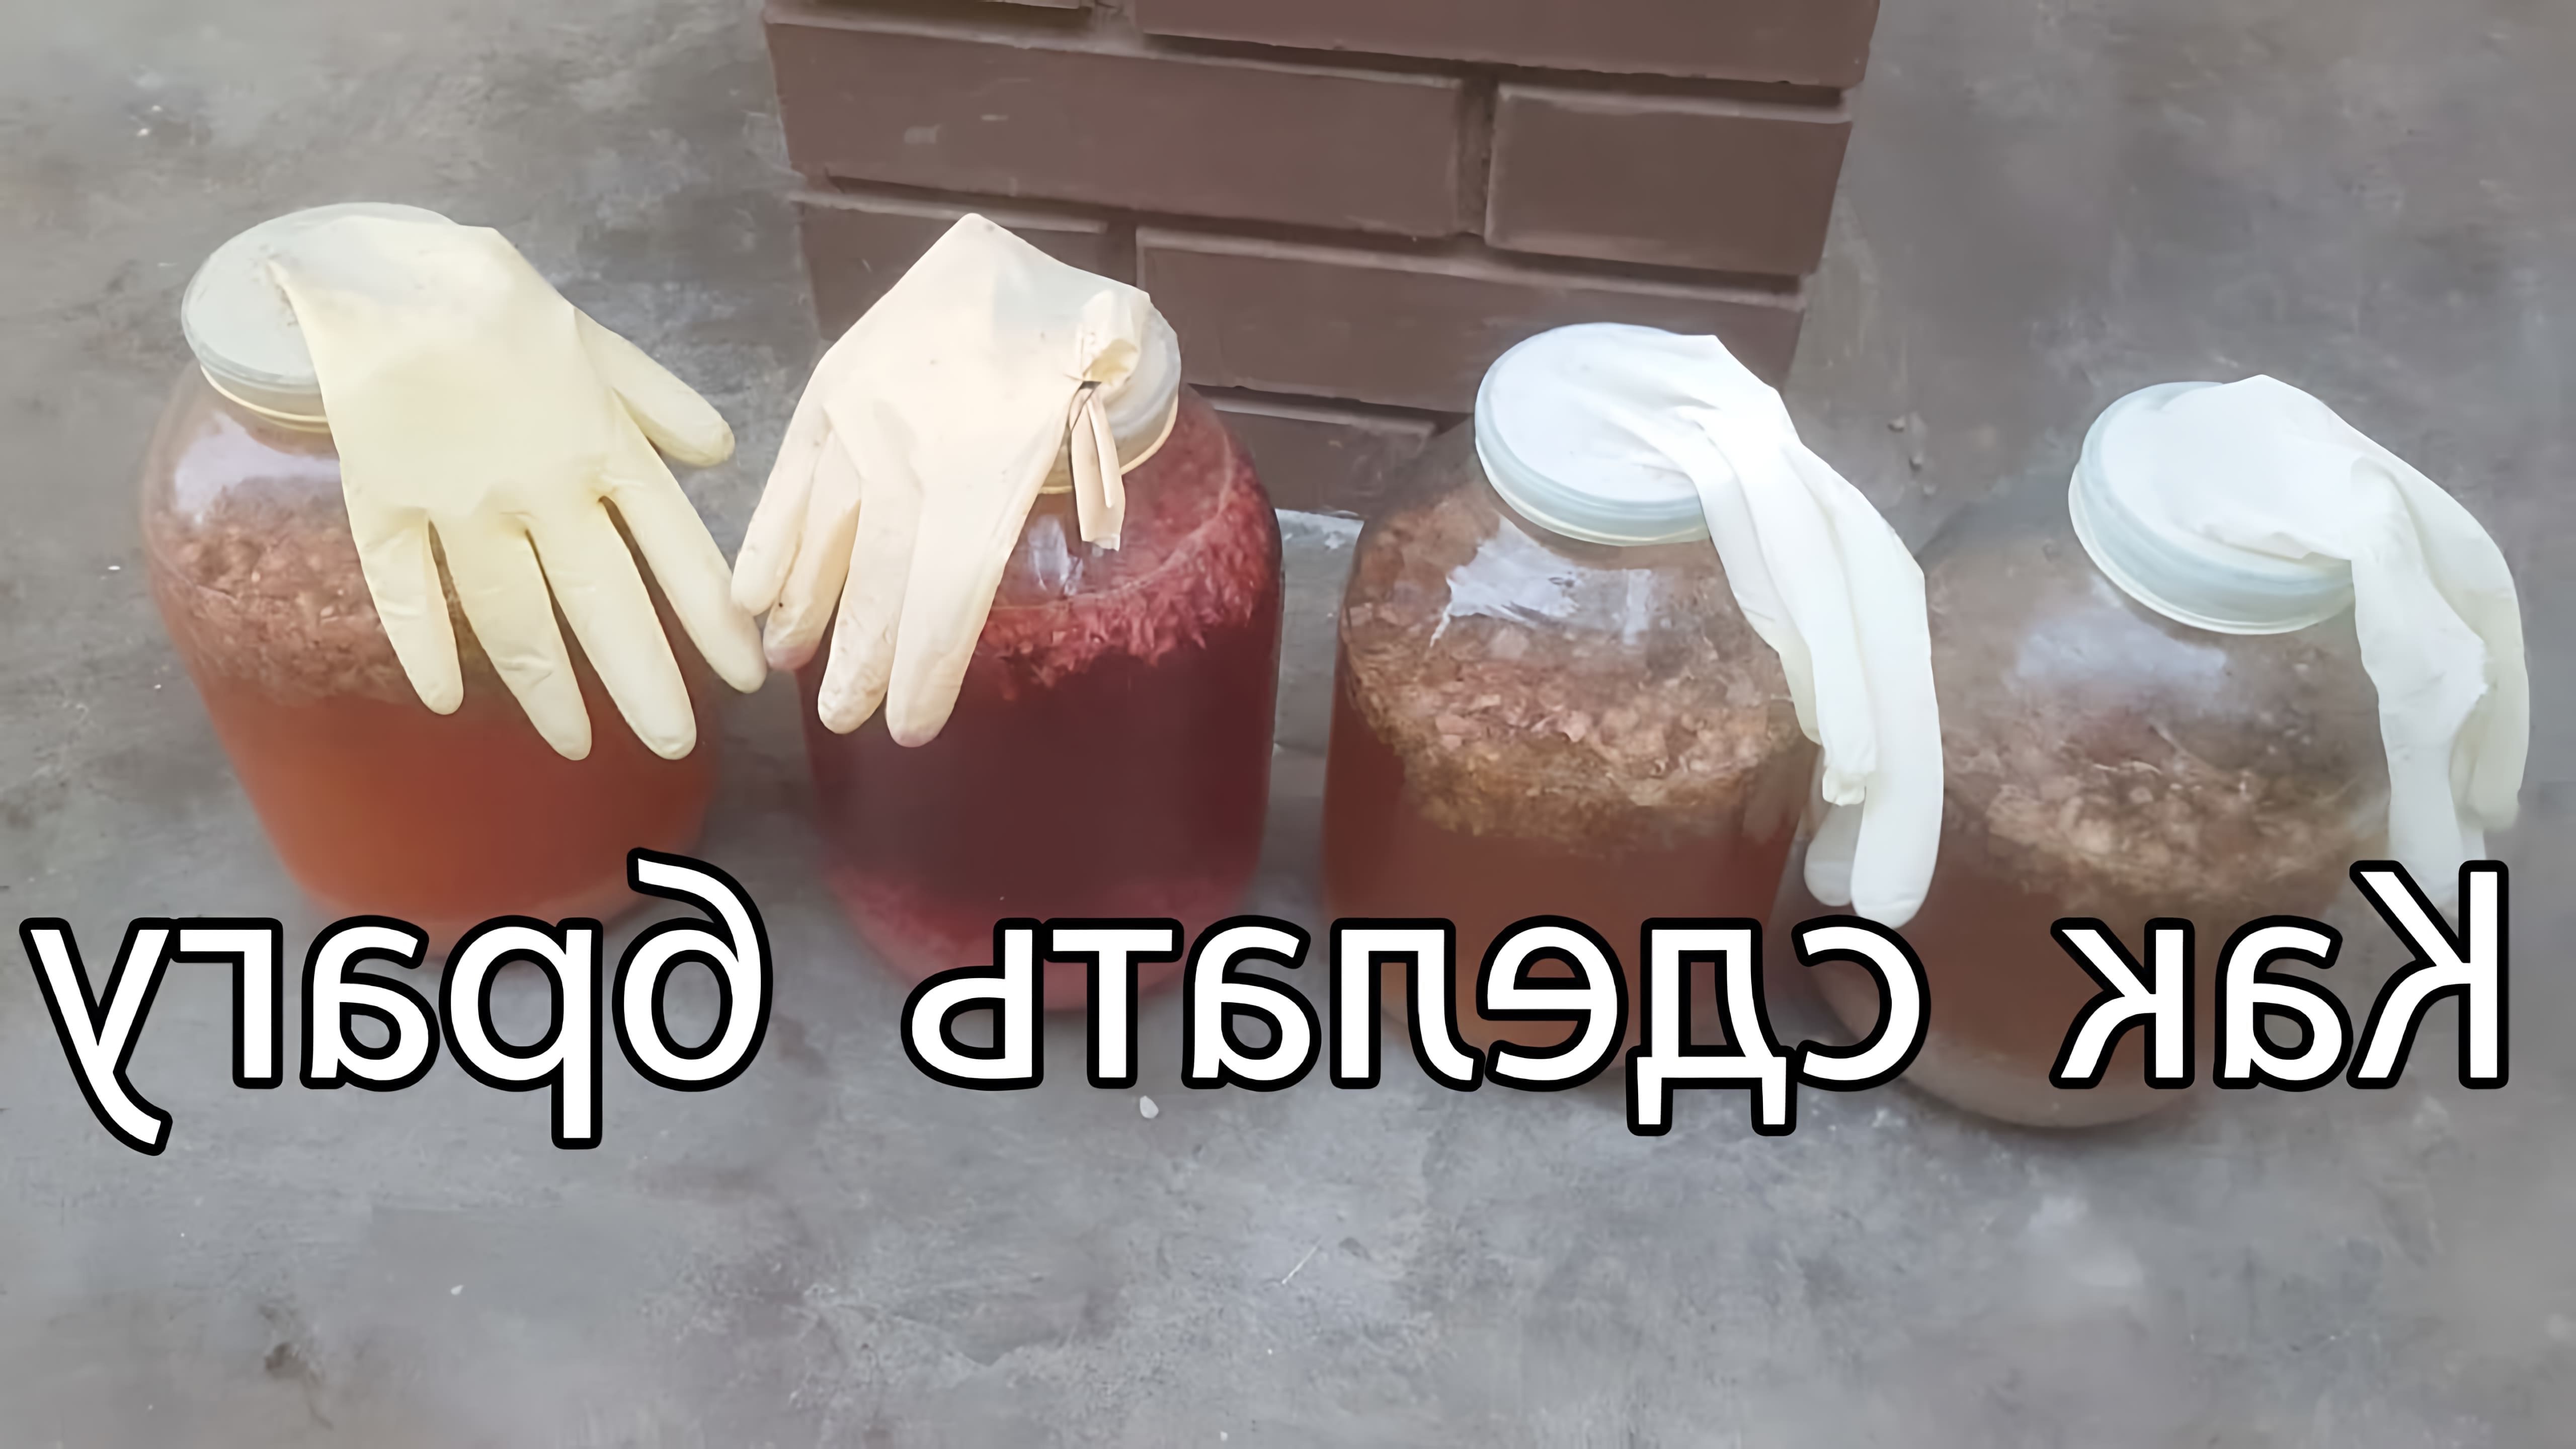 В этом видео рассказывается о том, как сделать брагу по-советски